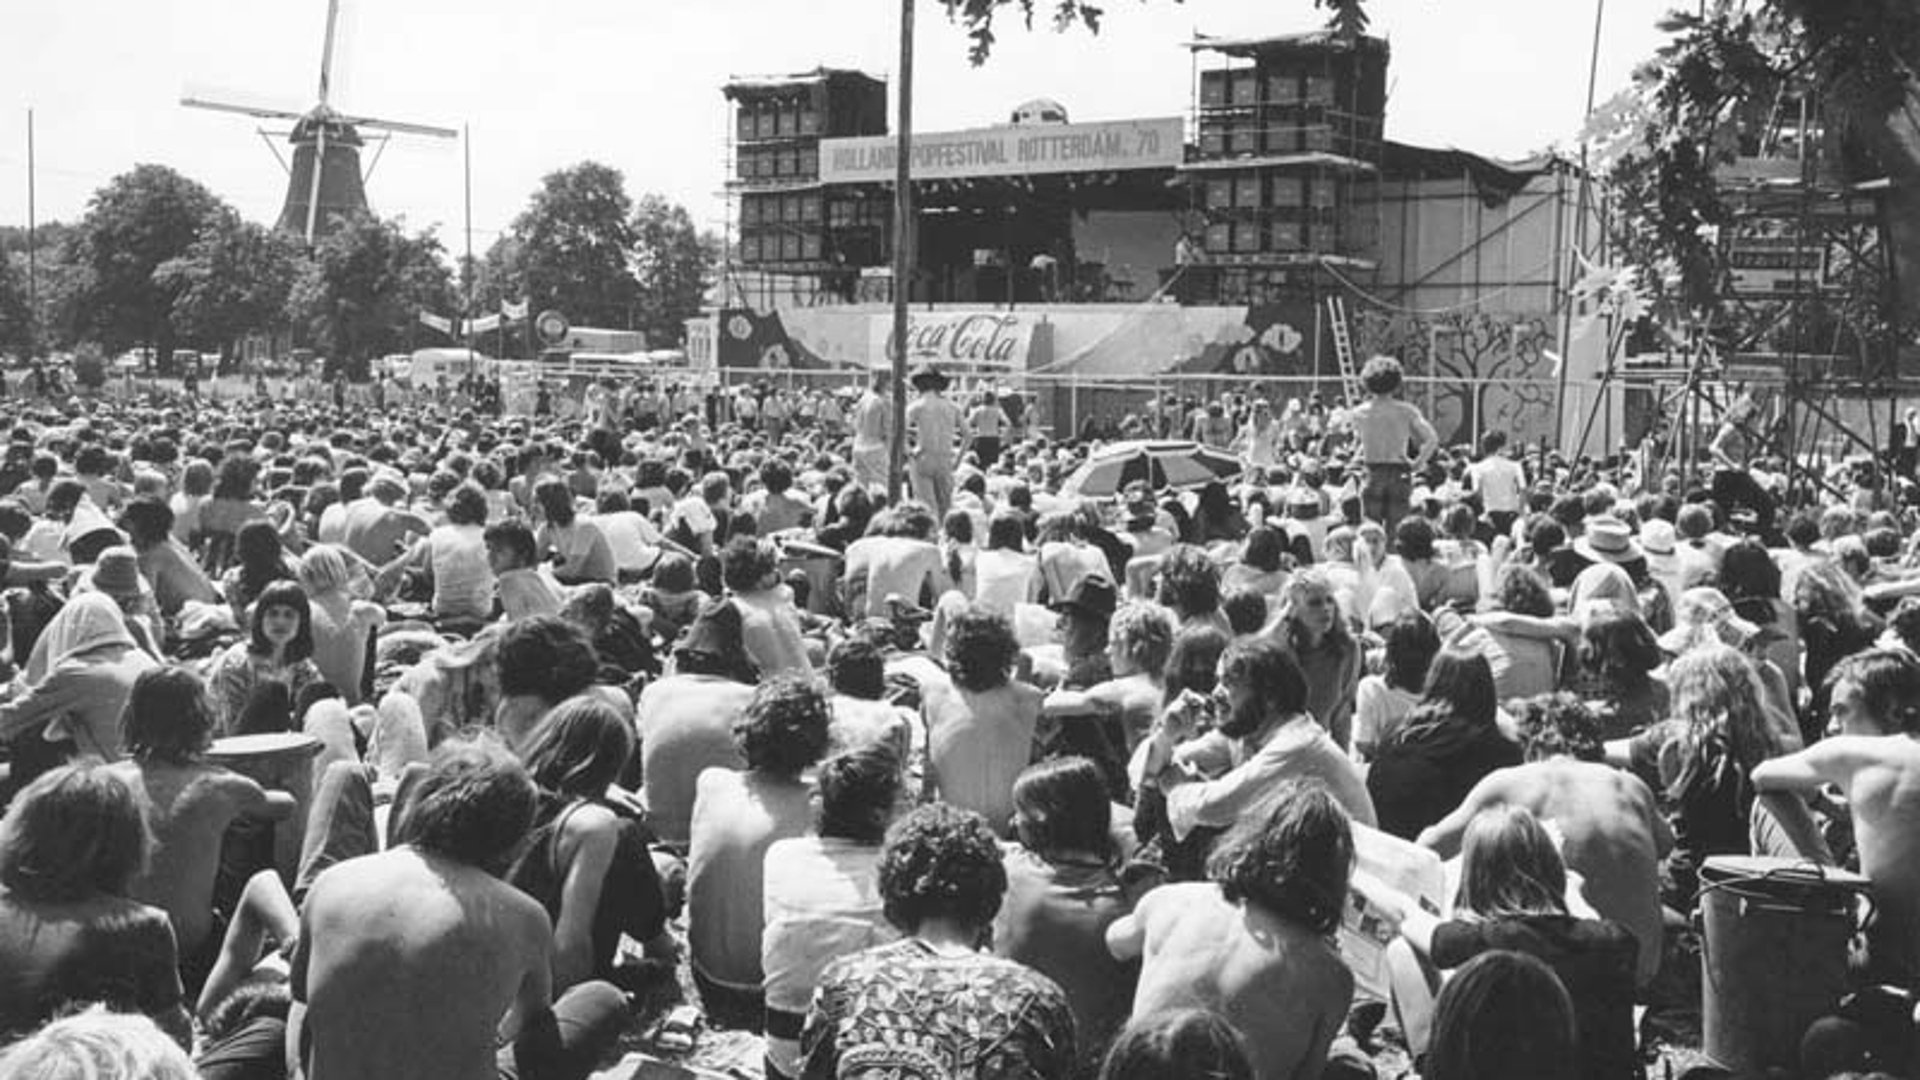 Van 26 t/m 28 juni 1970 was het terrein van het Kralingse Bos in bezit genomen door bezoekers van het legendarische, driedaagse Holland Pop Festival. Foto: Stadsarchief Rotterdam